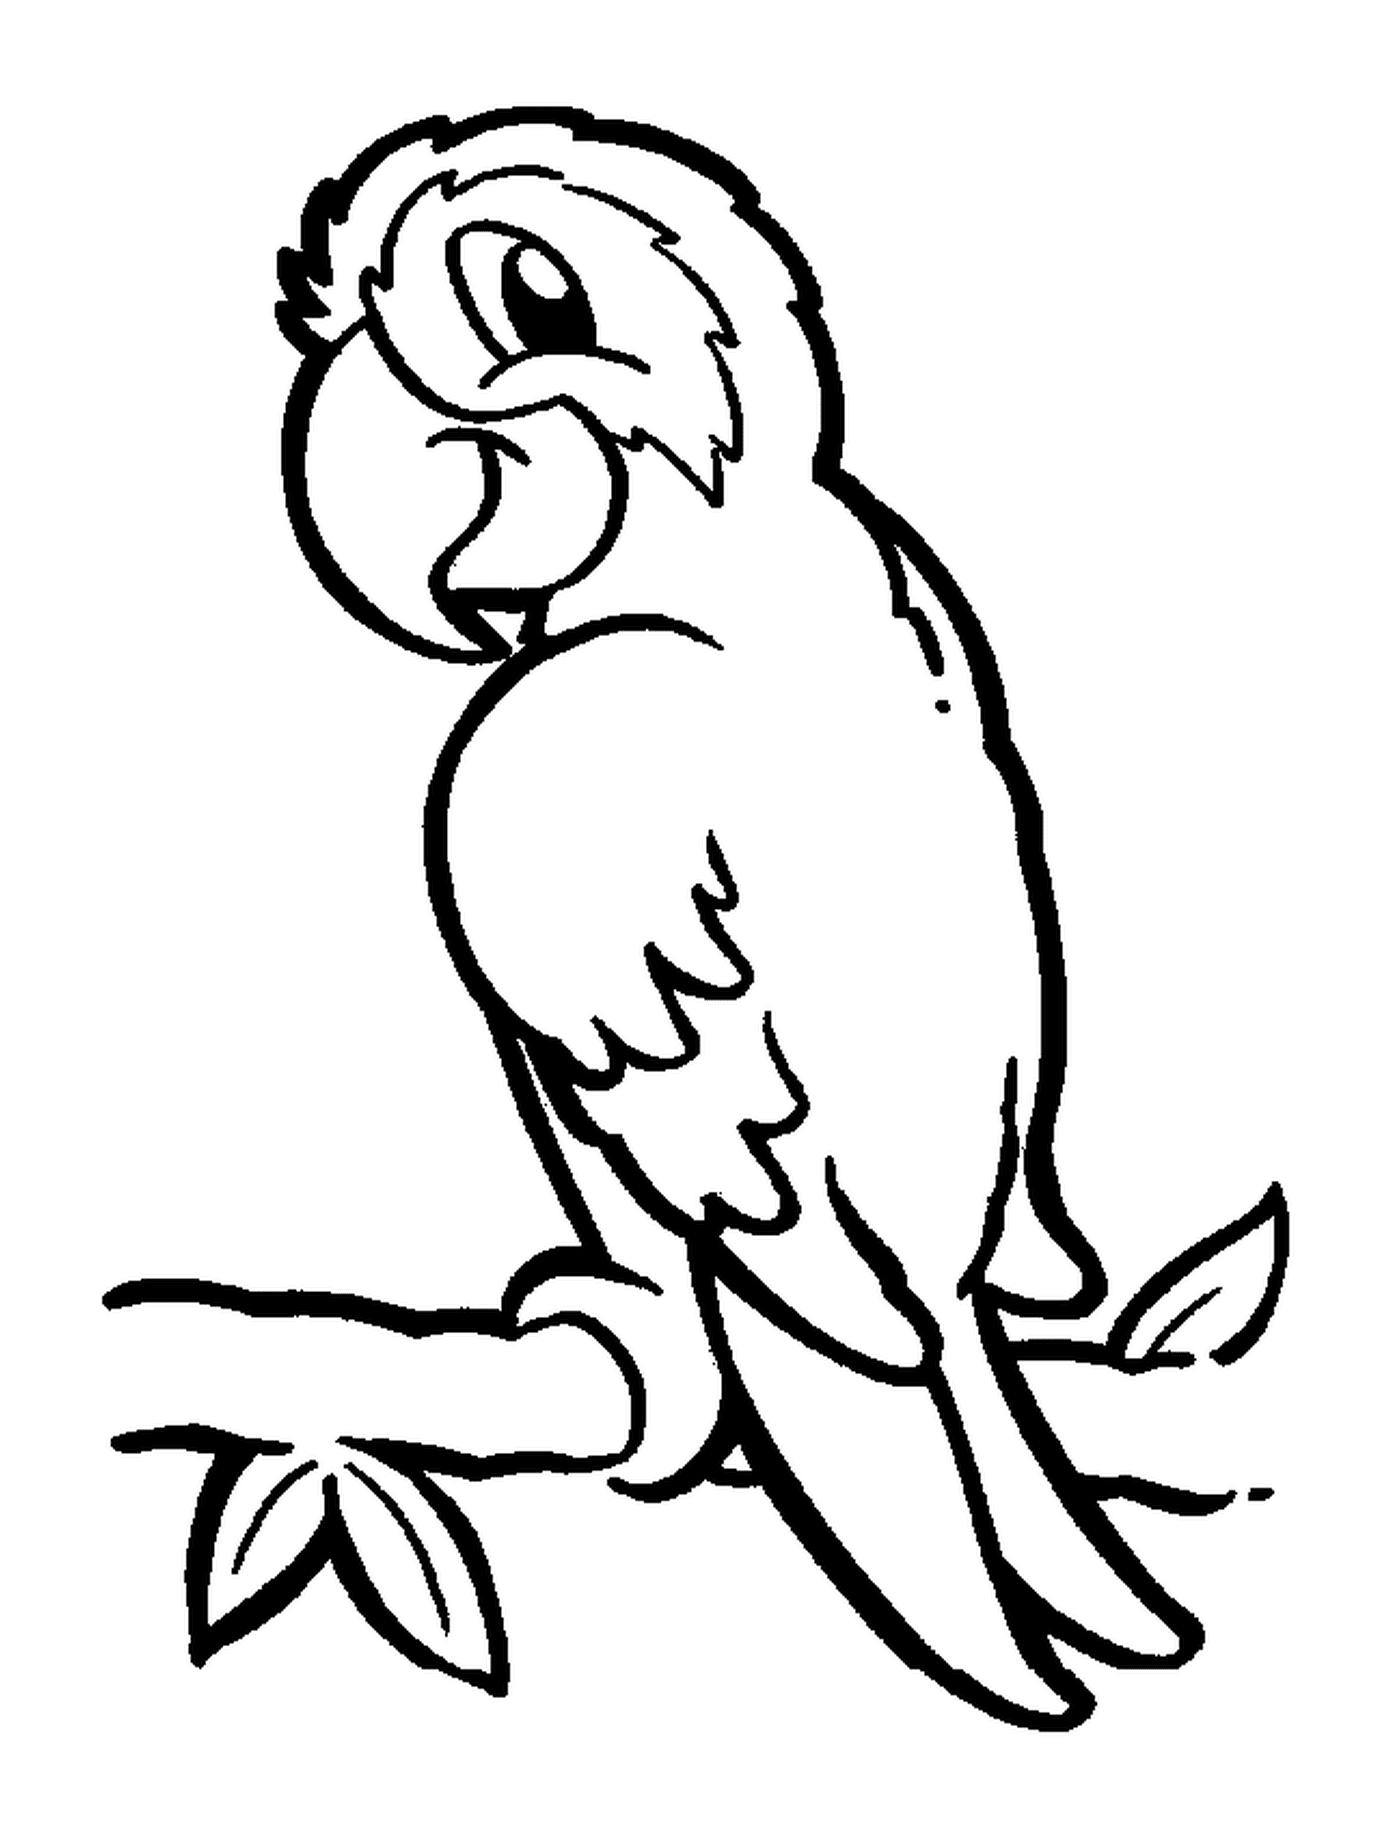   Perroquet, oiseau exotique aux plumages colorés 